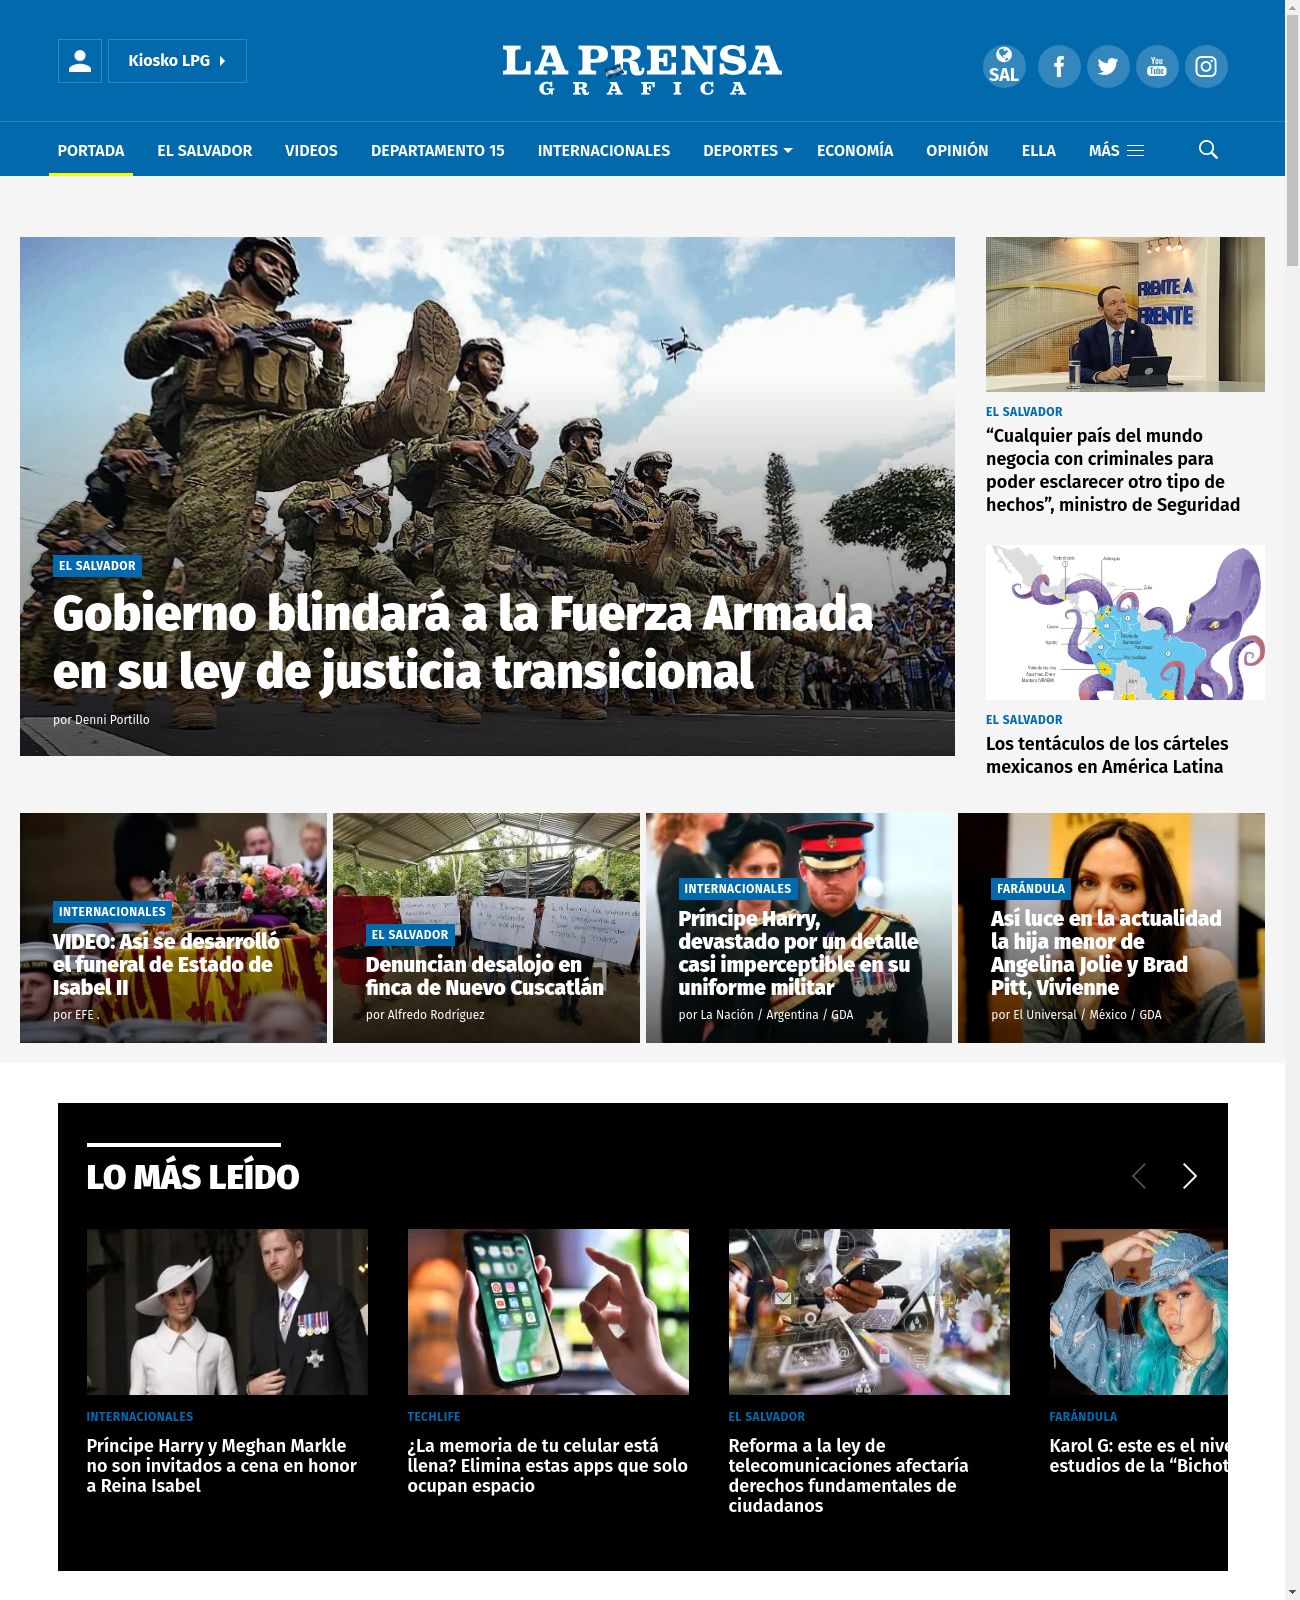 Prensa Grafica at 2022-09-19 11:36:45-06:00 local time